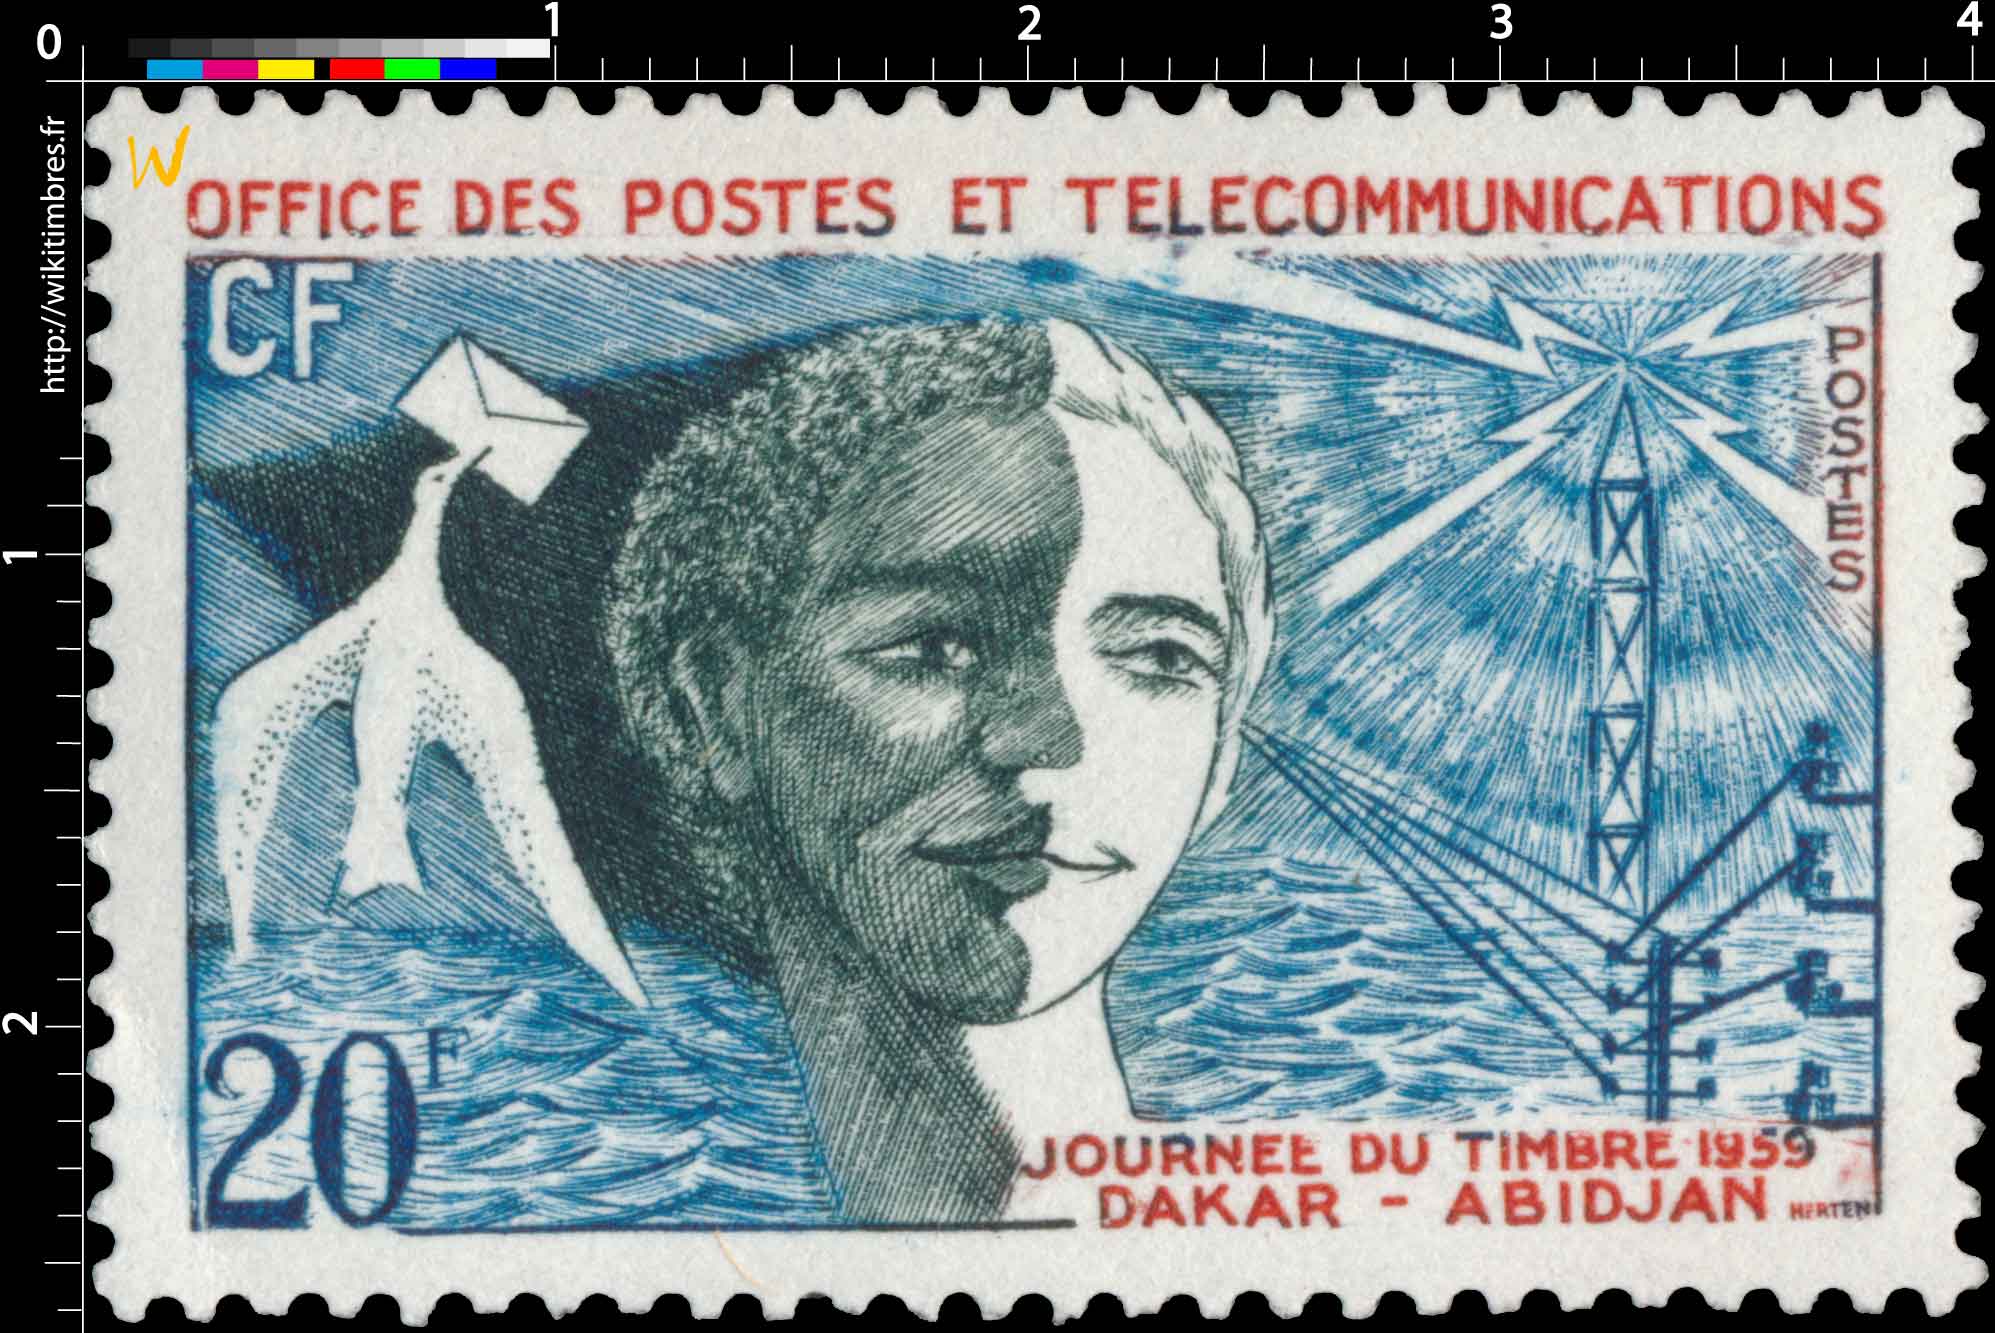 1959 Afrique Occidentale Française - Journée du timbre Dakar Abidjan